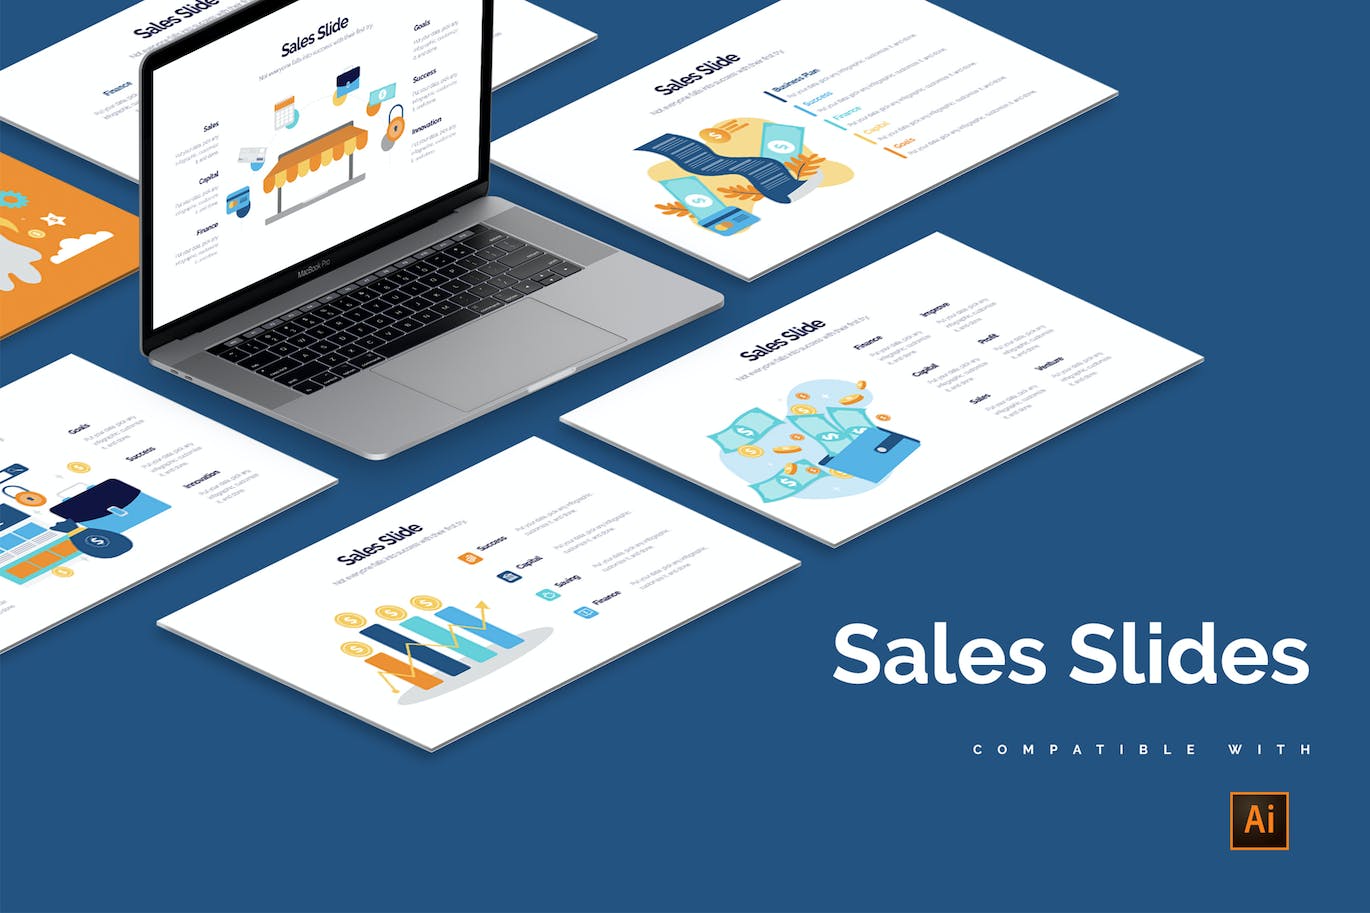 销售幻灯片信息图表设计AI矢量模板 Business Sales Slides Illustrator Infographics 幻灯图表 第1张